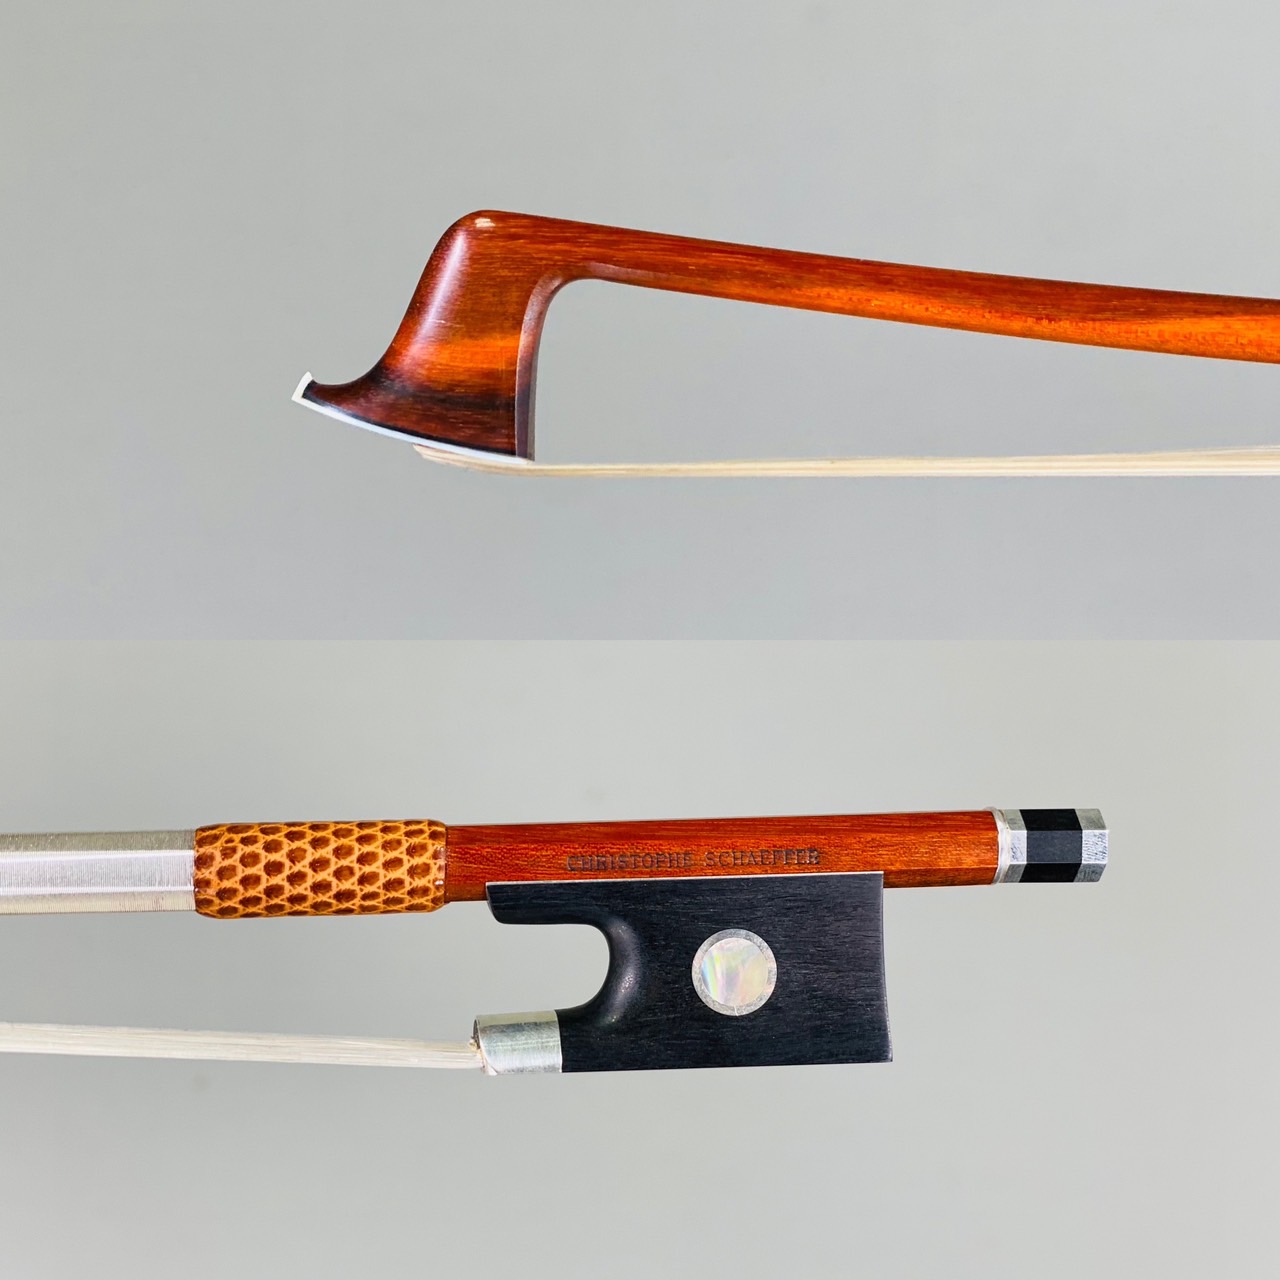 Christophe Schaeffer Christophe Schaeffer（クリストフ・シェーファー）は1958年生まれ。Bernard Ouchard（ベルナール・ウーシャ）に弓製作を学び、20世紀最高の弓職人と称されるEugene Sartory（ユージン・サルトリー）の子孫からその道具 […]